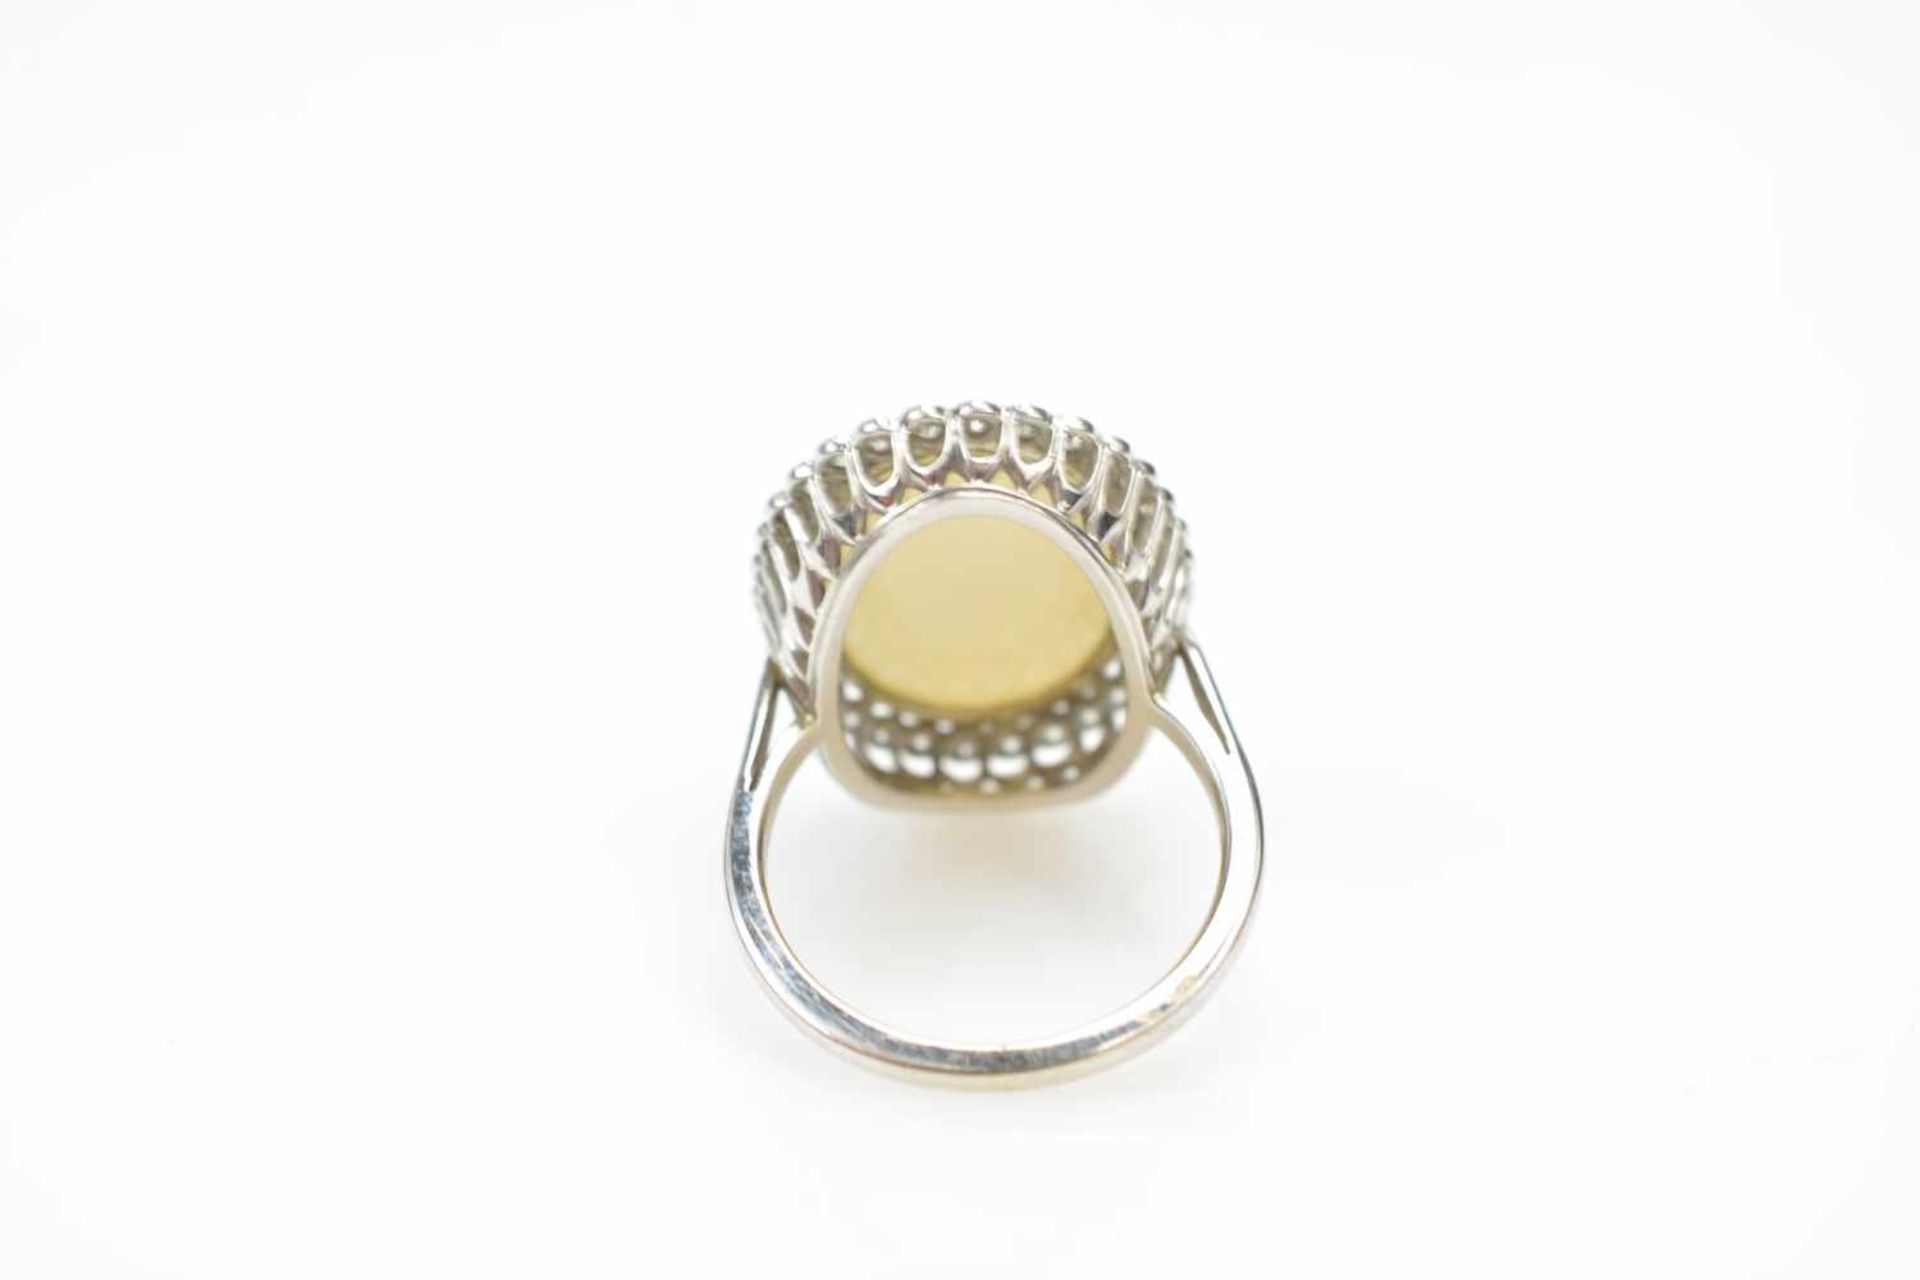 Damenring750 Weißgold, 32 Brillanten, gesamt ca. 0,9 ct, ein weißer Opal, Ringdurchmesser 18,5 mm, - Image 2 of 2